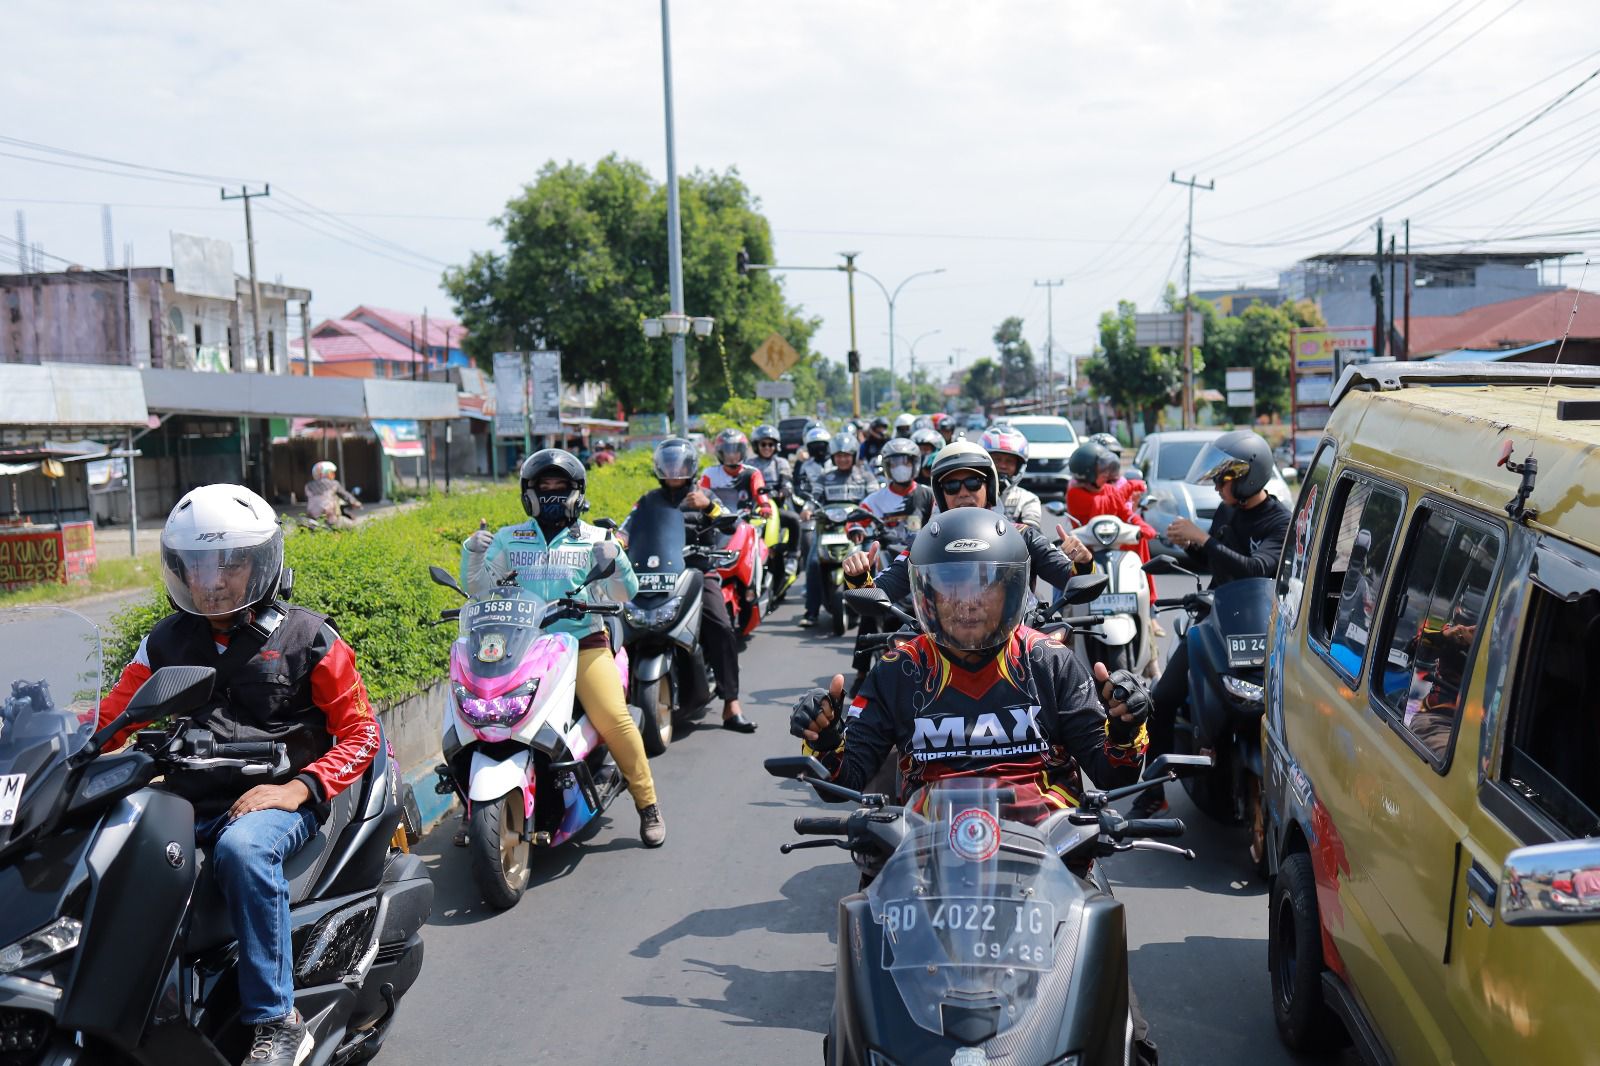 Rolling city Maxi Riders Bengkulu (MRB), Mio, Vixion Bringas, Rx-King Tobo Kito dan R15 CB.